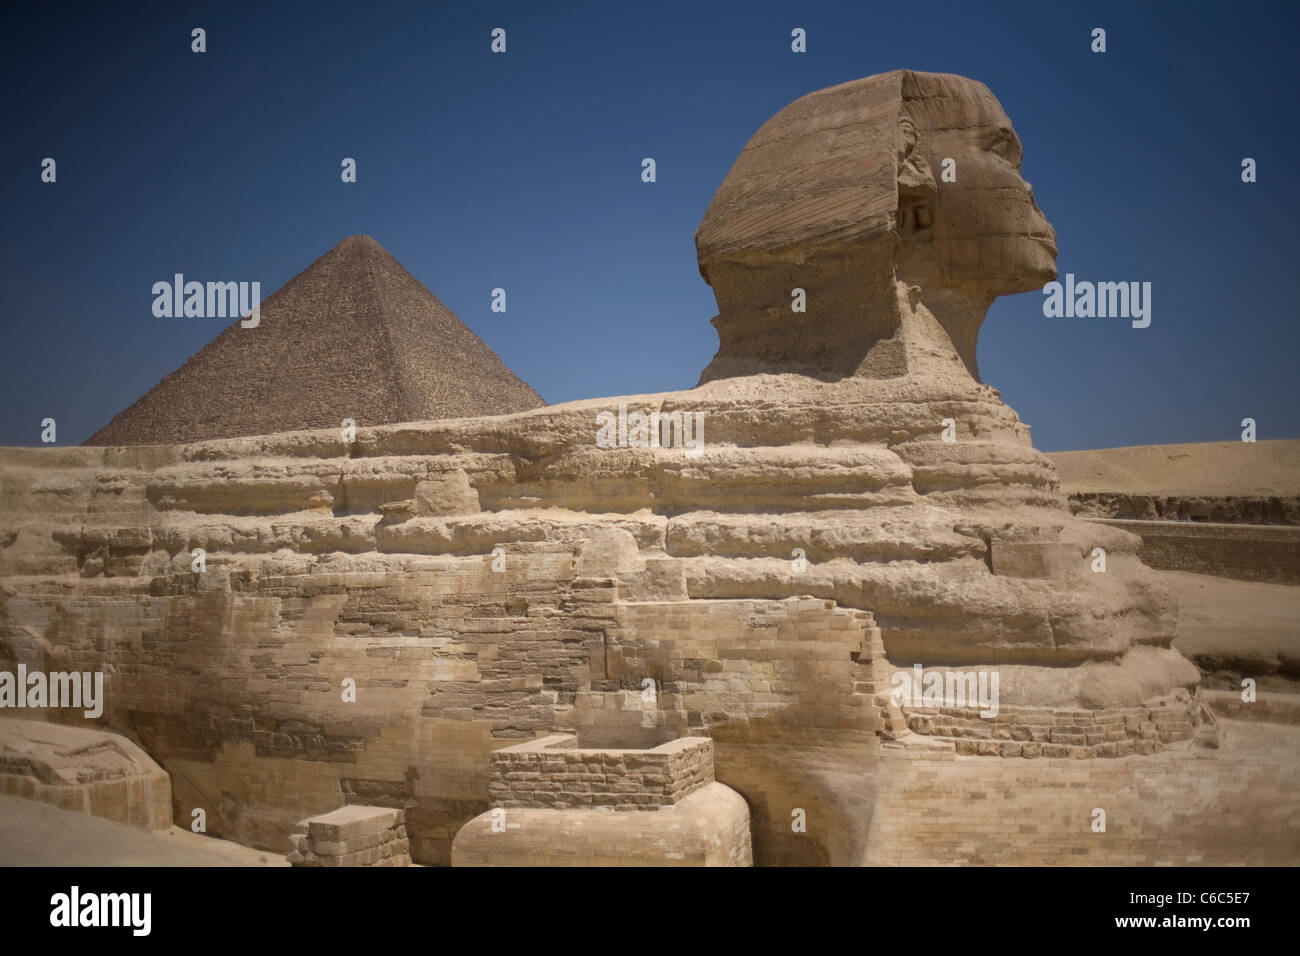 Le grand Sphinx de Gizeh, près du Caire, Egypte, 9 août 2011 Banque D'Images